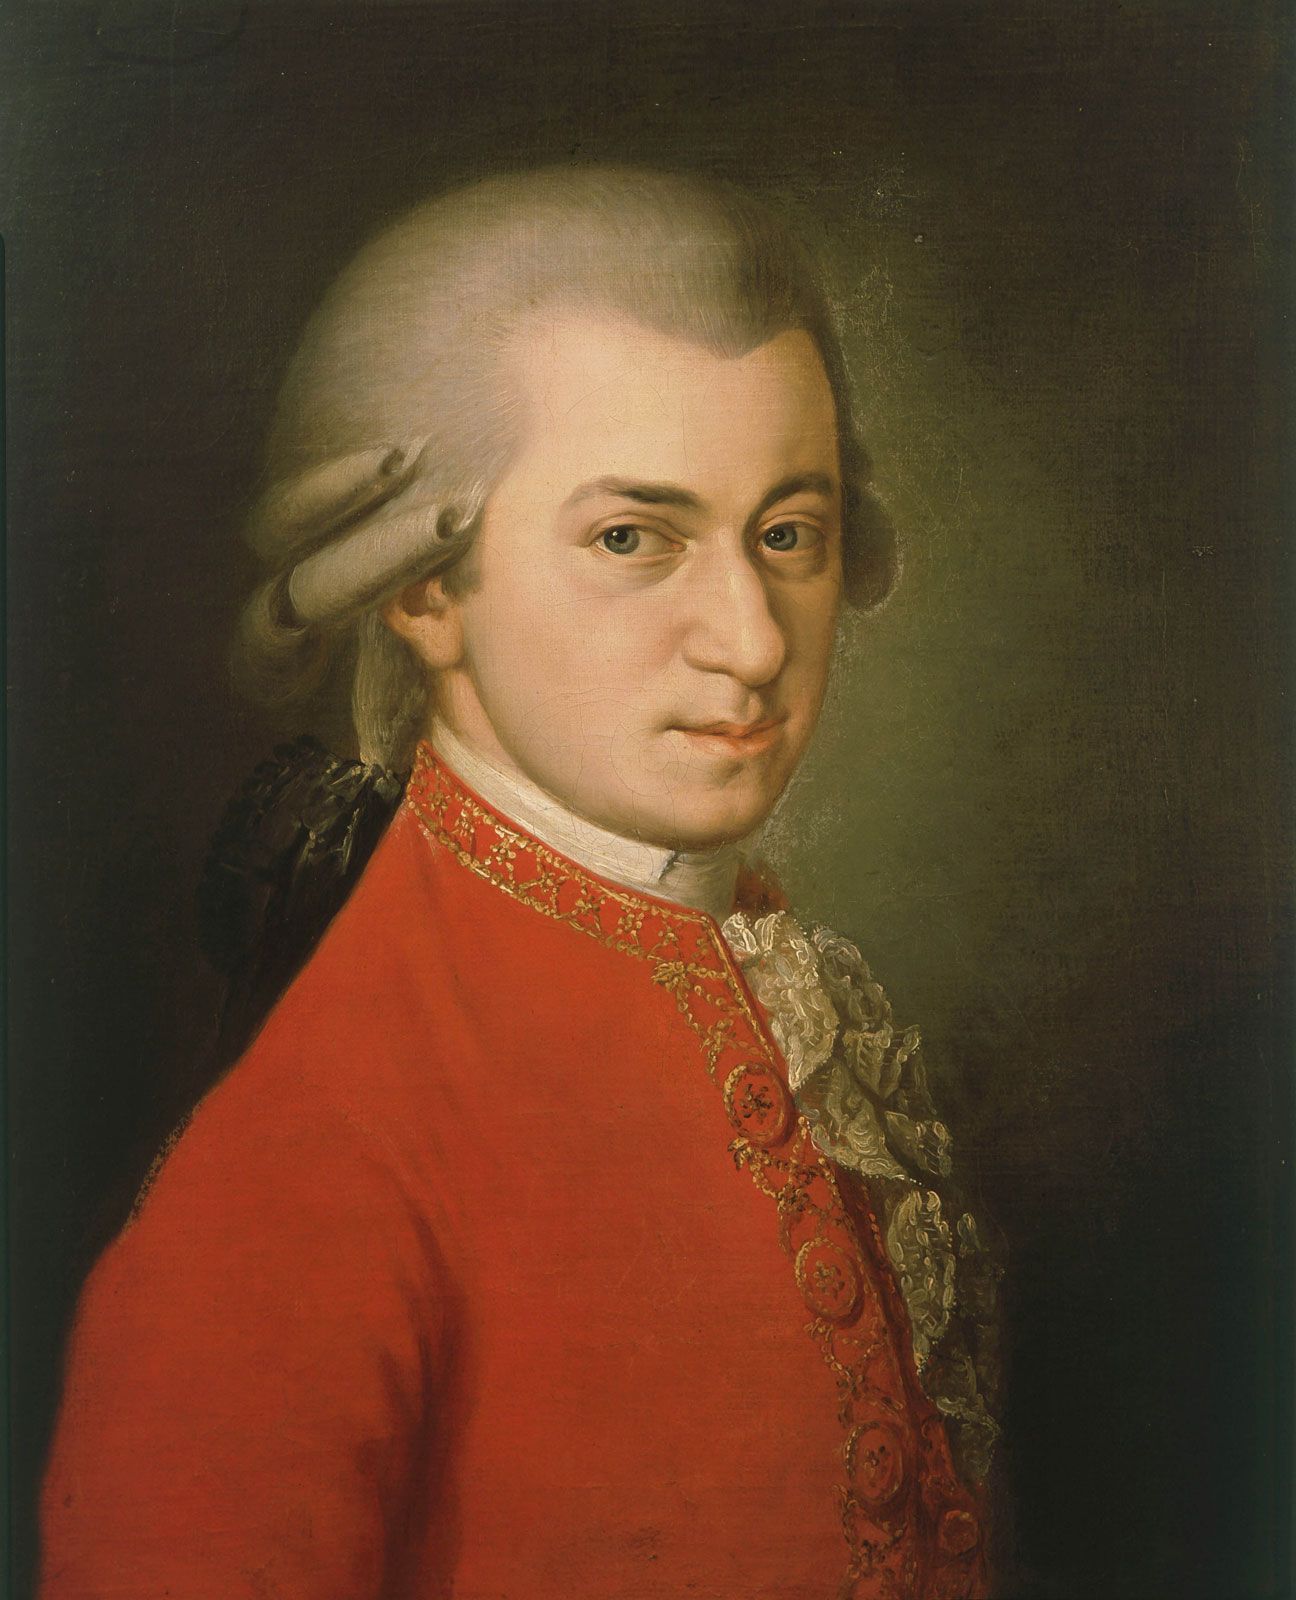  Biografi Wolfgang Amadeus Mozart